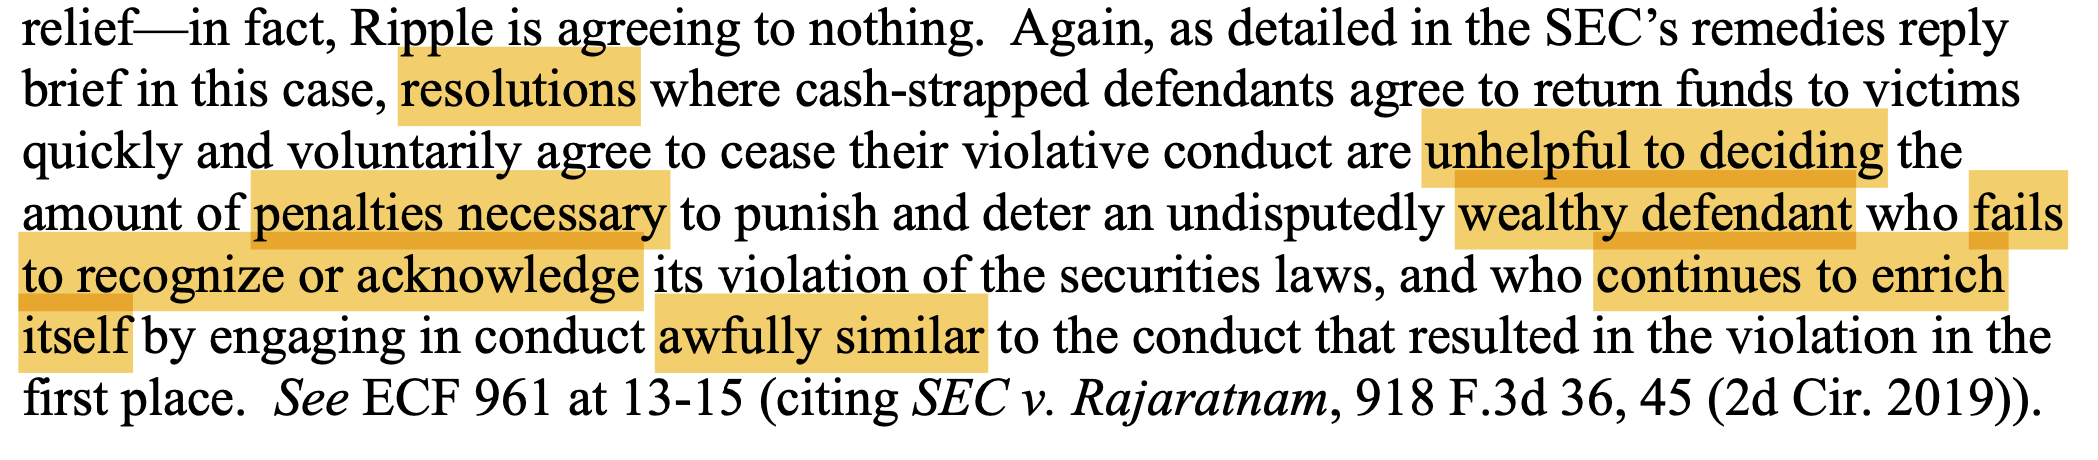 SEC bác bỏ lập luận của Ripples về việc giảm hình phạt